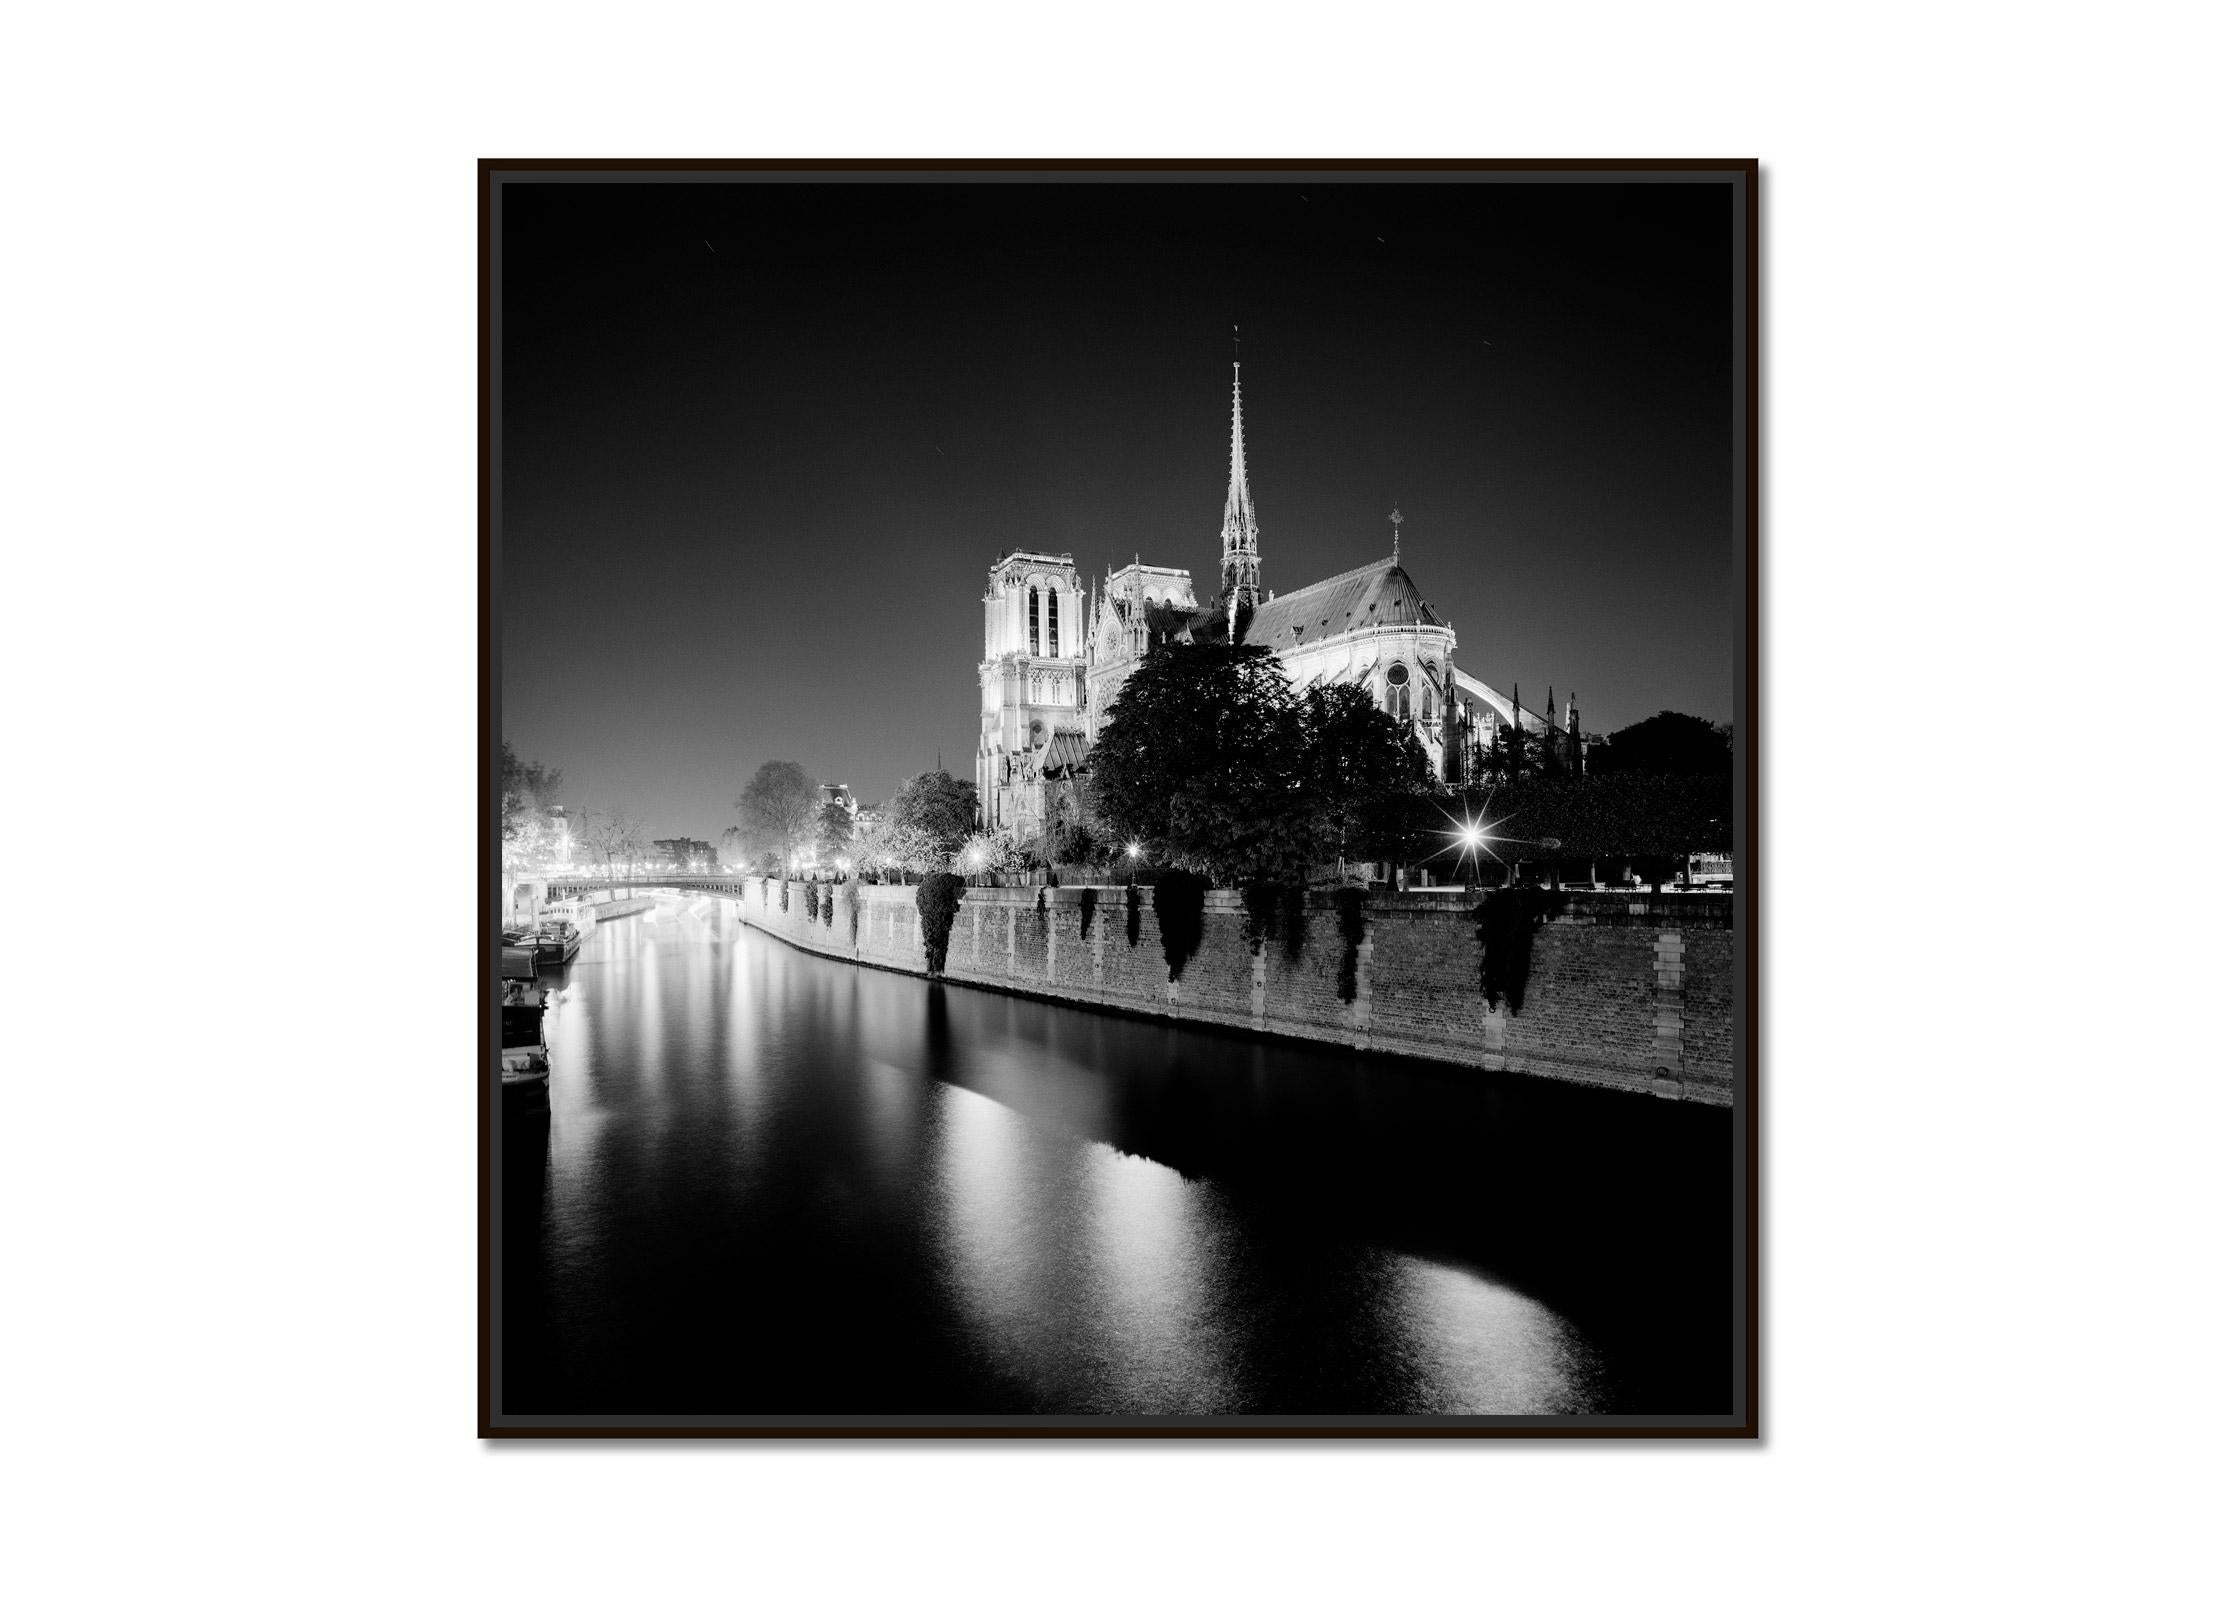 Cathédrale Notre-Dame Nuit Paris France noir et blanc photographie de paysage urbain - Photograph de Gerald Berghammer